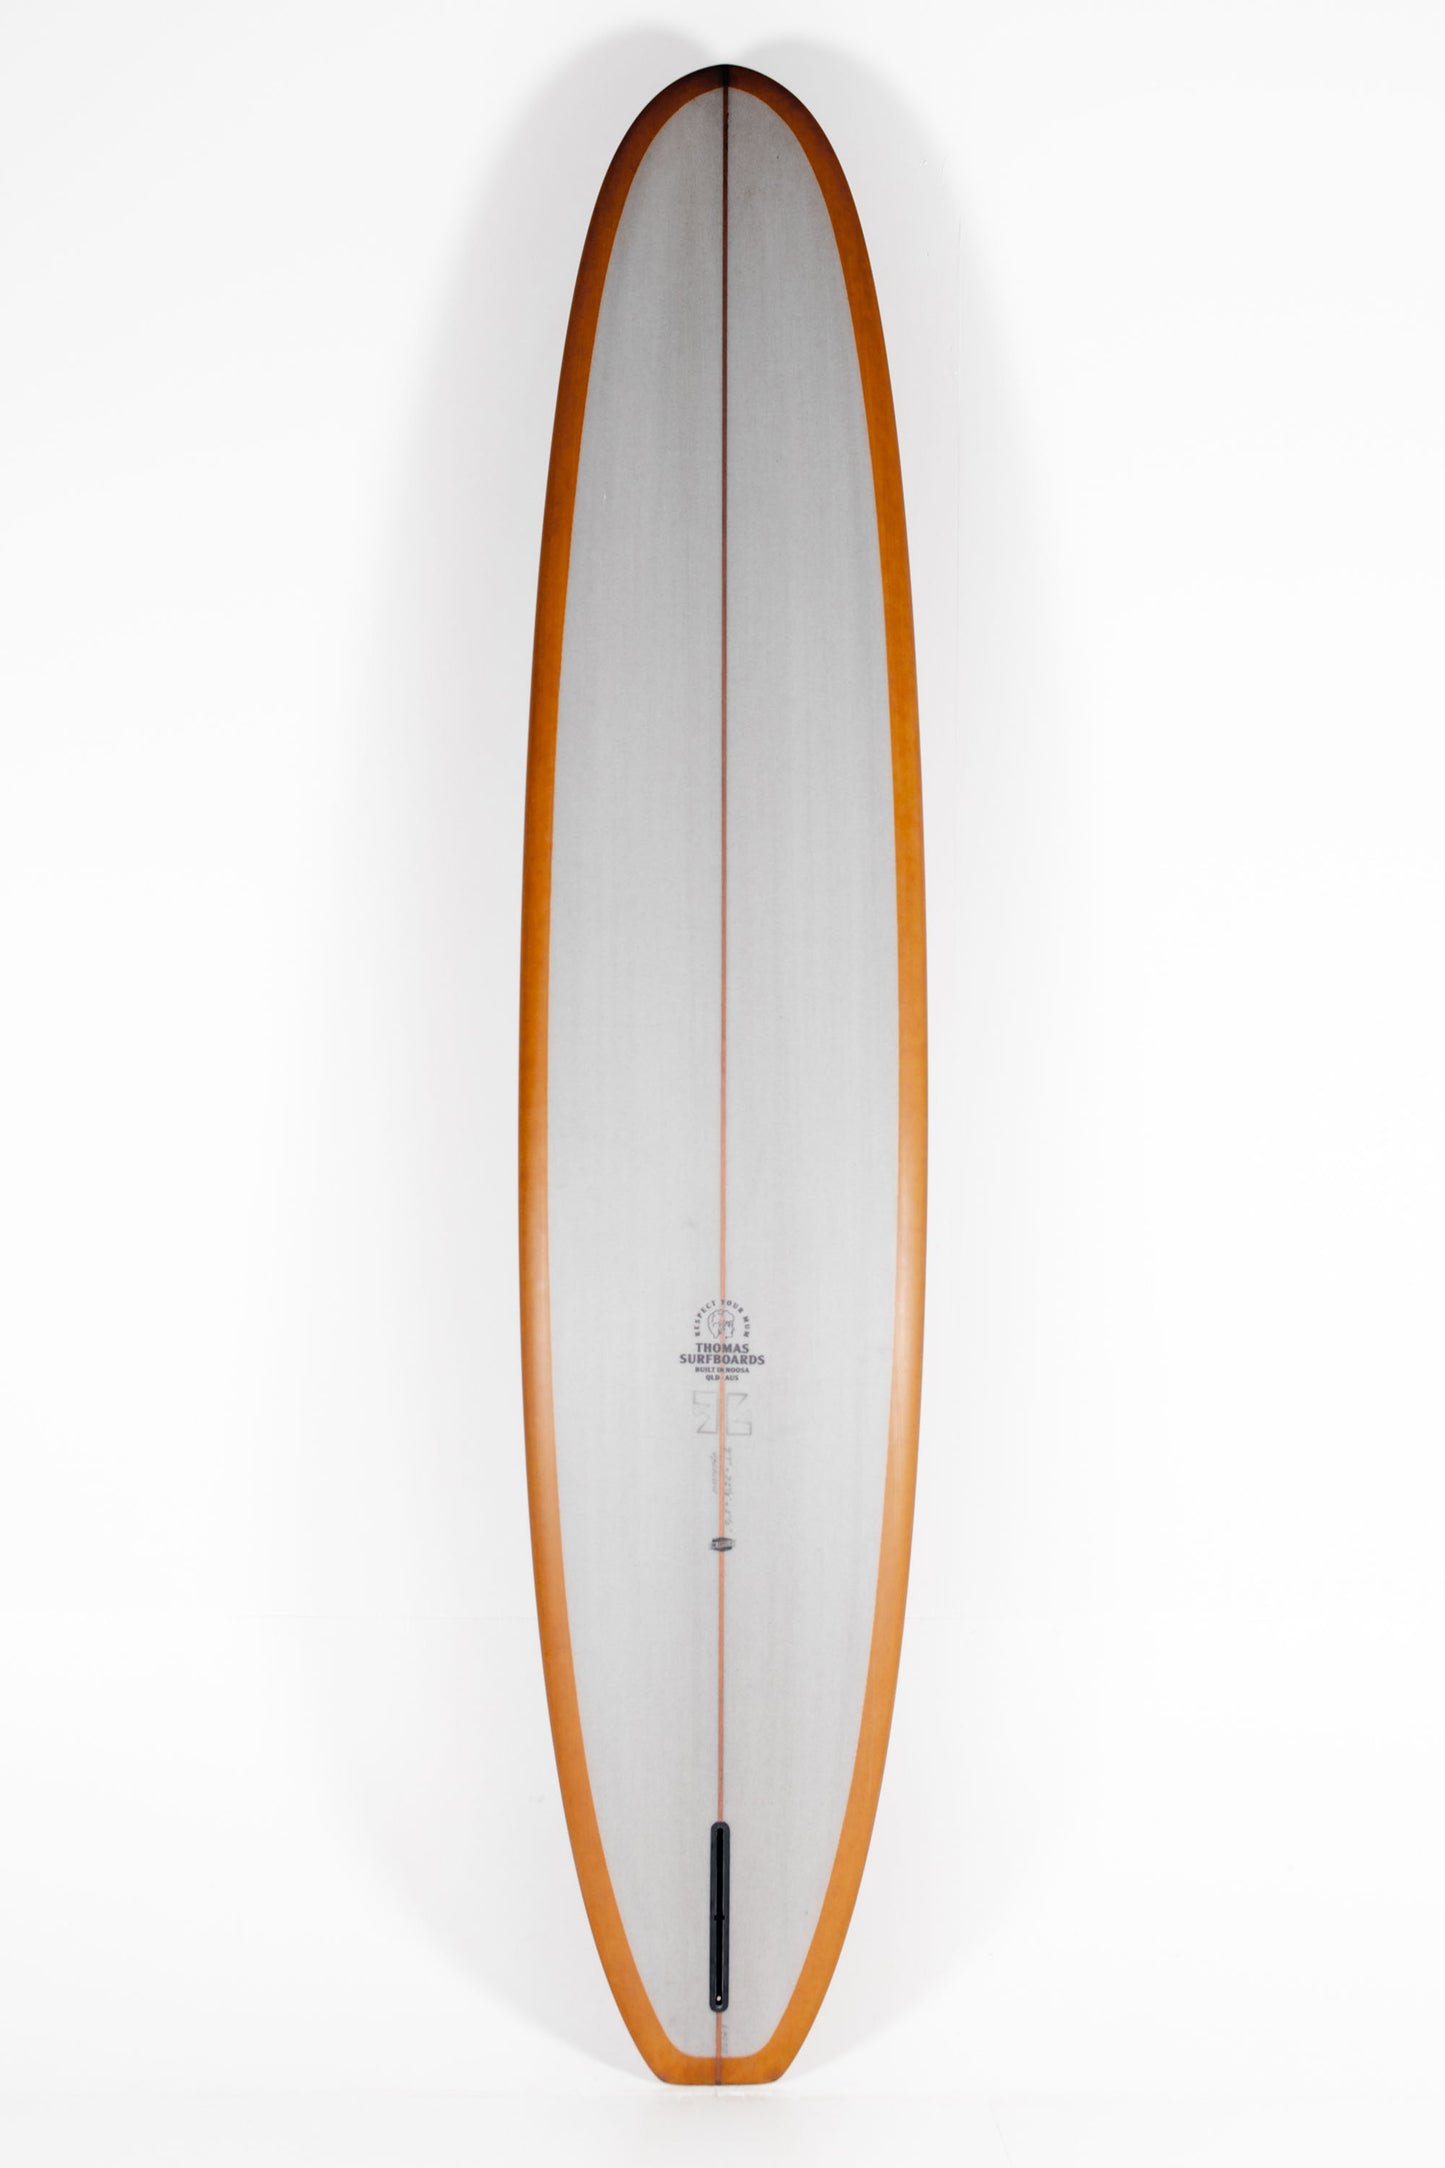 Pukas Surf Shop - Thomas Surfboards - HARRISON CONCEPT - 9'9"x 23 1/8 x 3 1/8 - Ref. HARRISON99